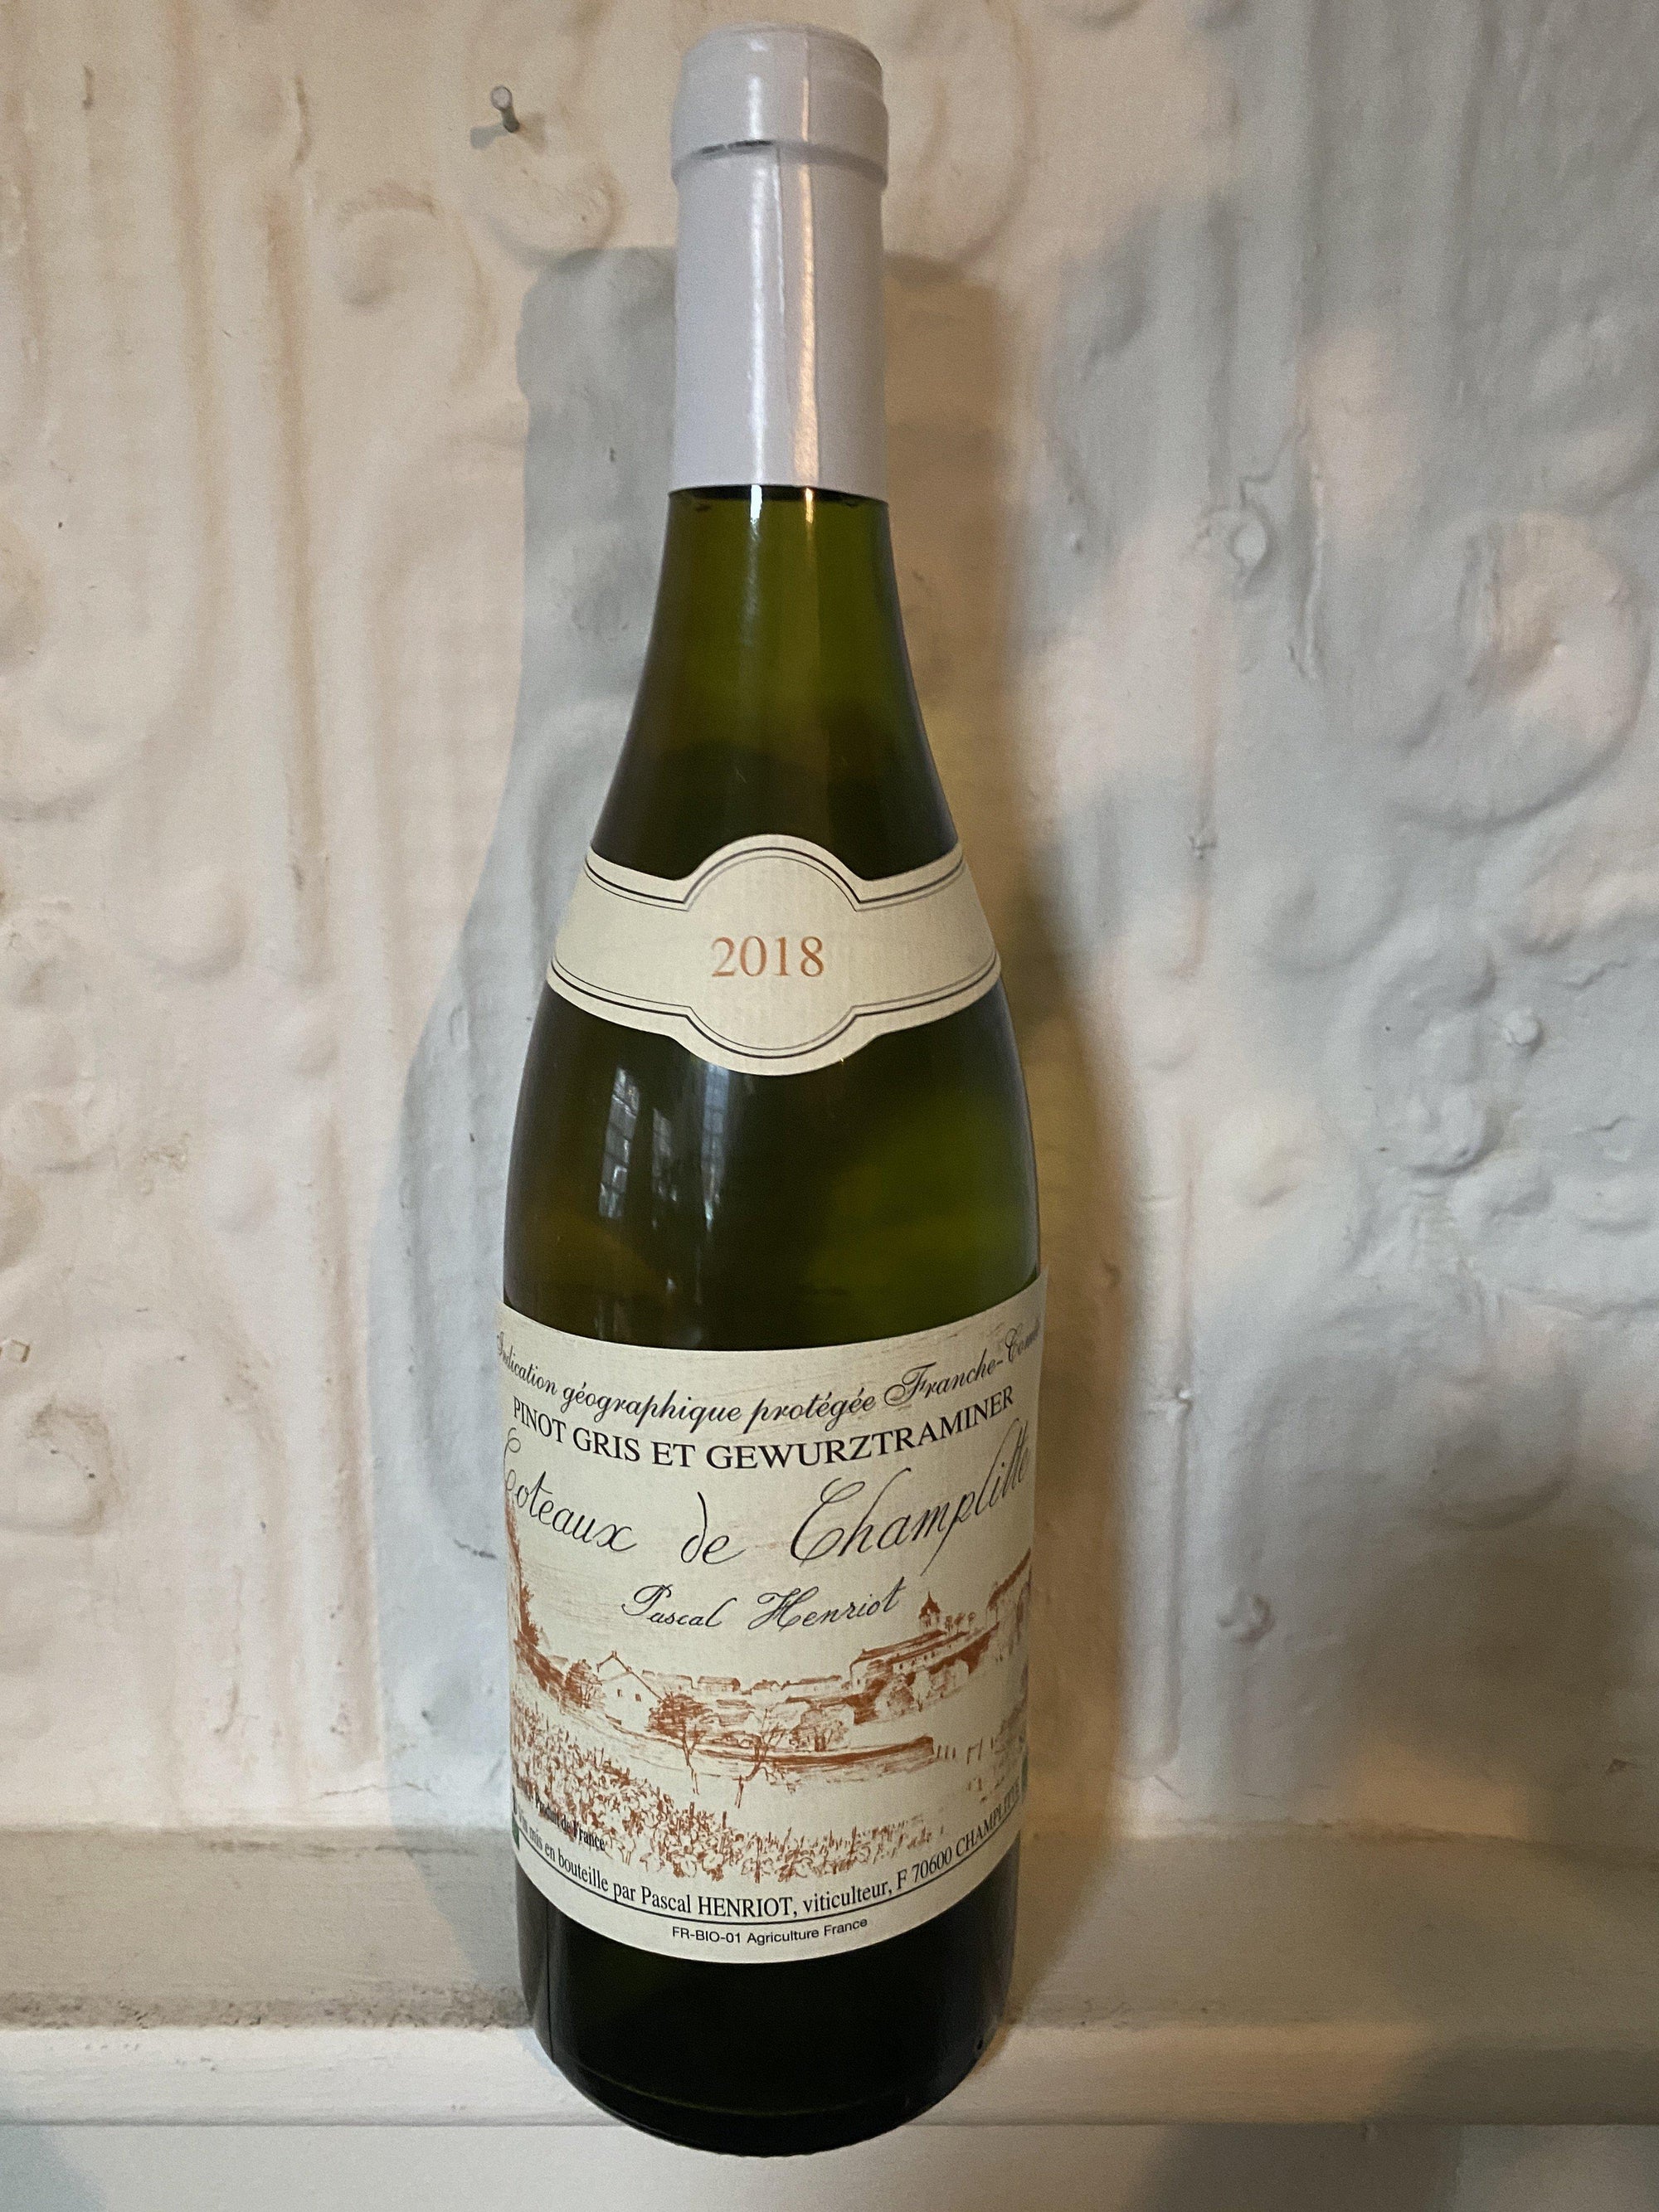 Pinot Gris et Gewurtztraminer, Pascal Henriot 2018 (Franche-Comte, France)-Wine-Bibber & Bell